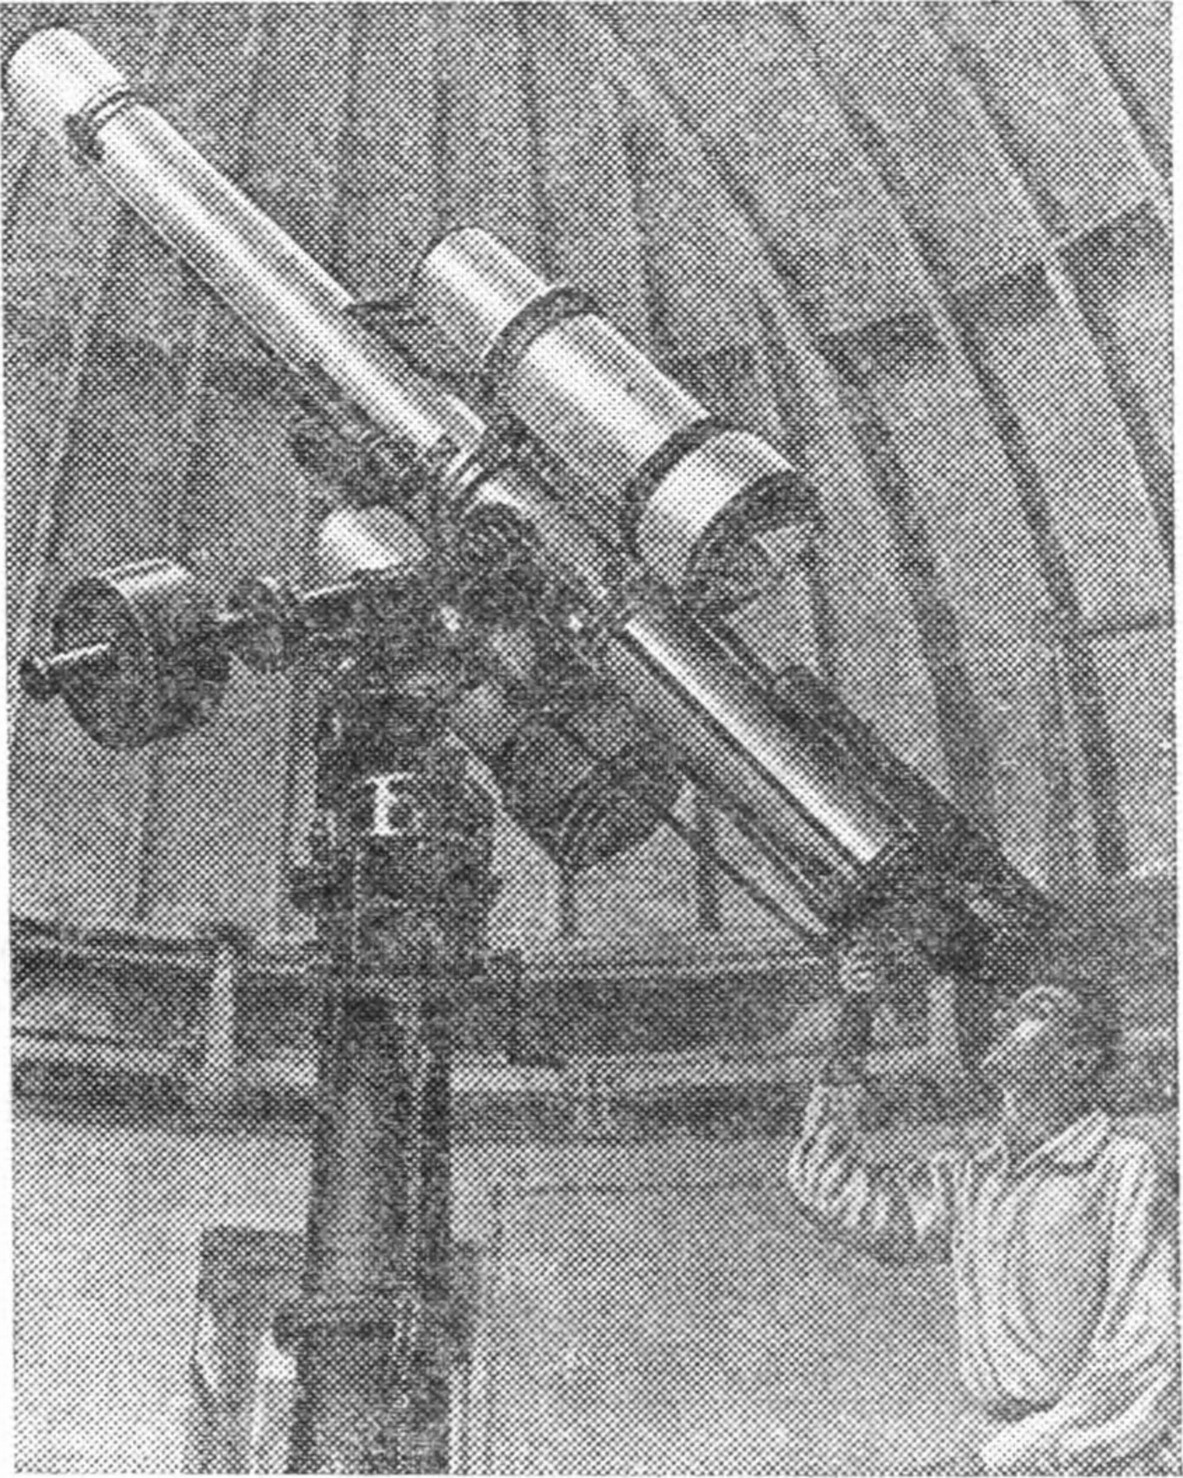 Рис. 8. Двойной астрограф Симеизской обсерватории. У окулярного конца контрольной трубы астрографа — автор этой книги. (Снимок 1931 г.)